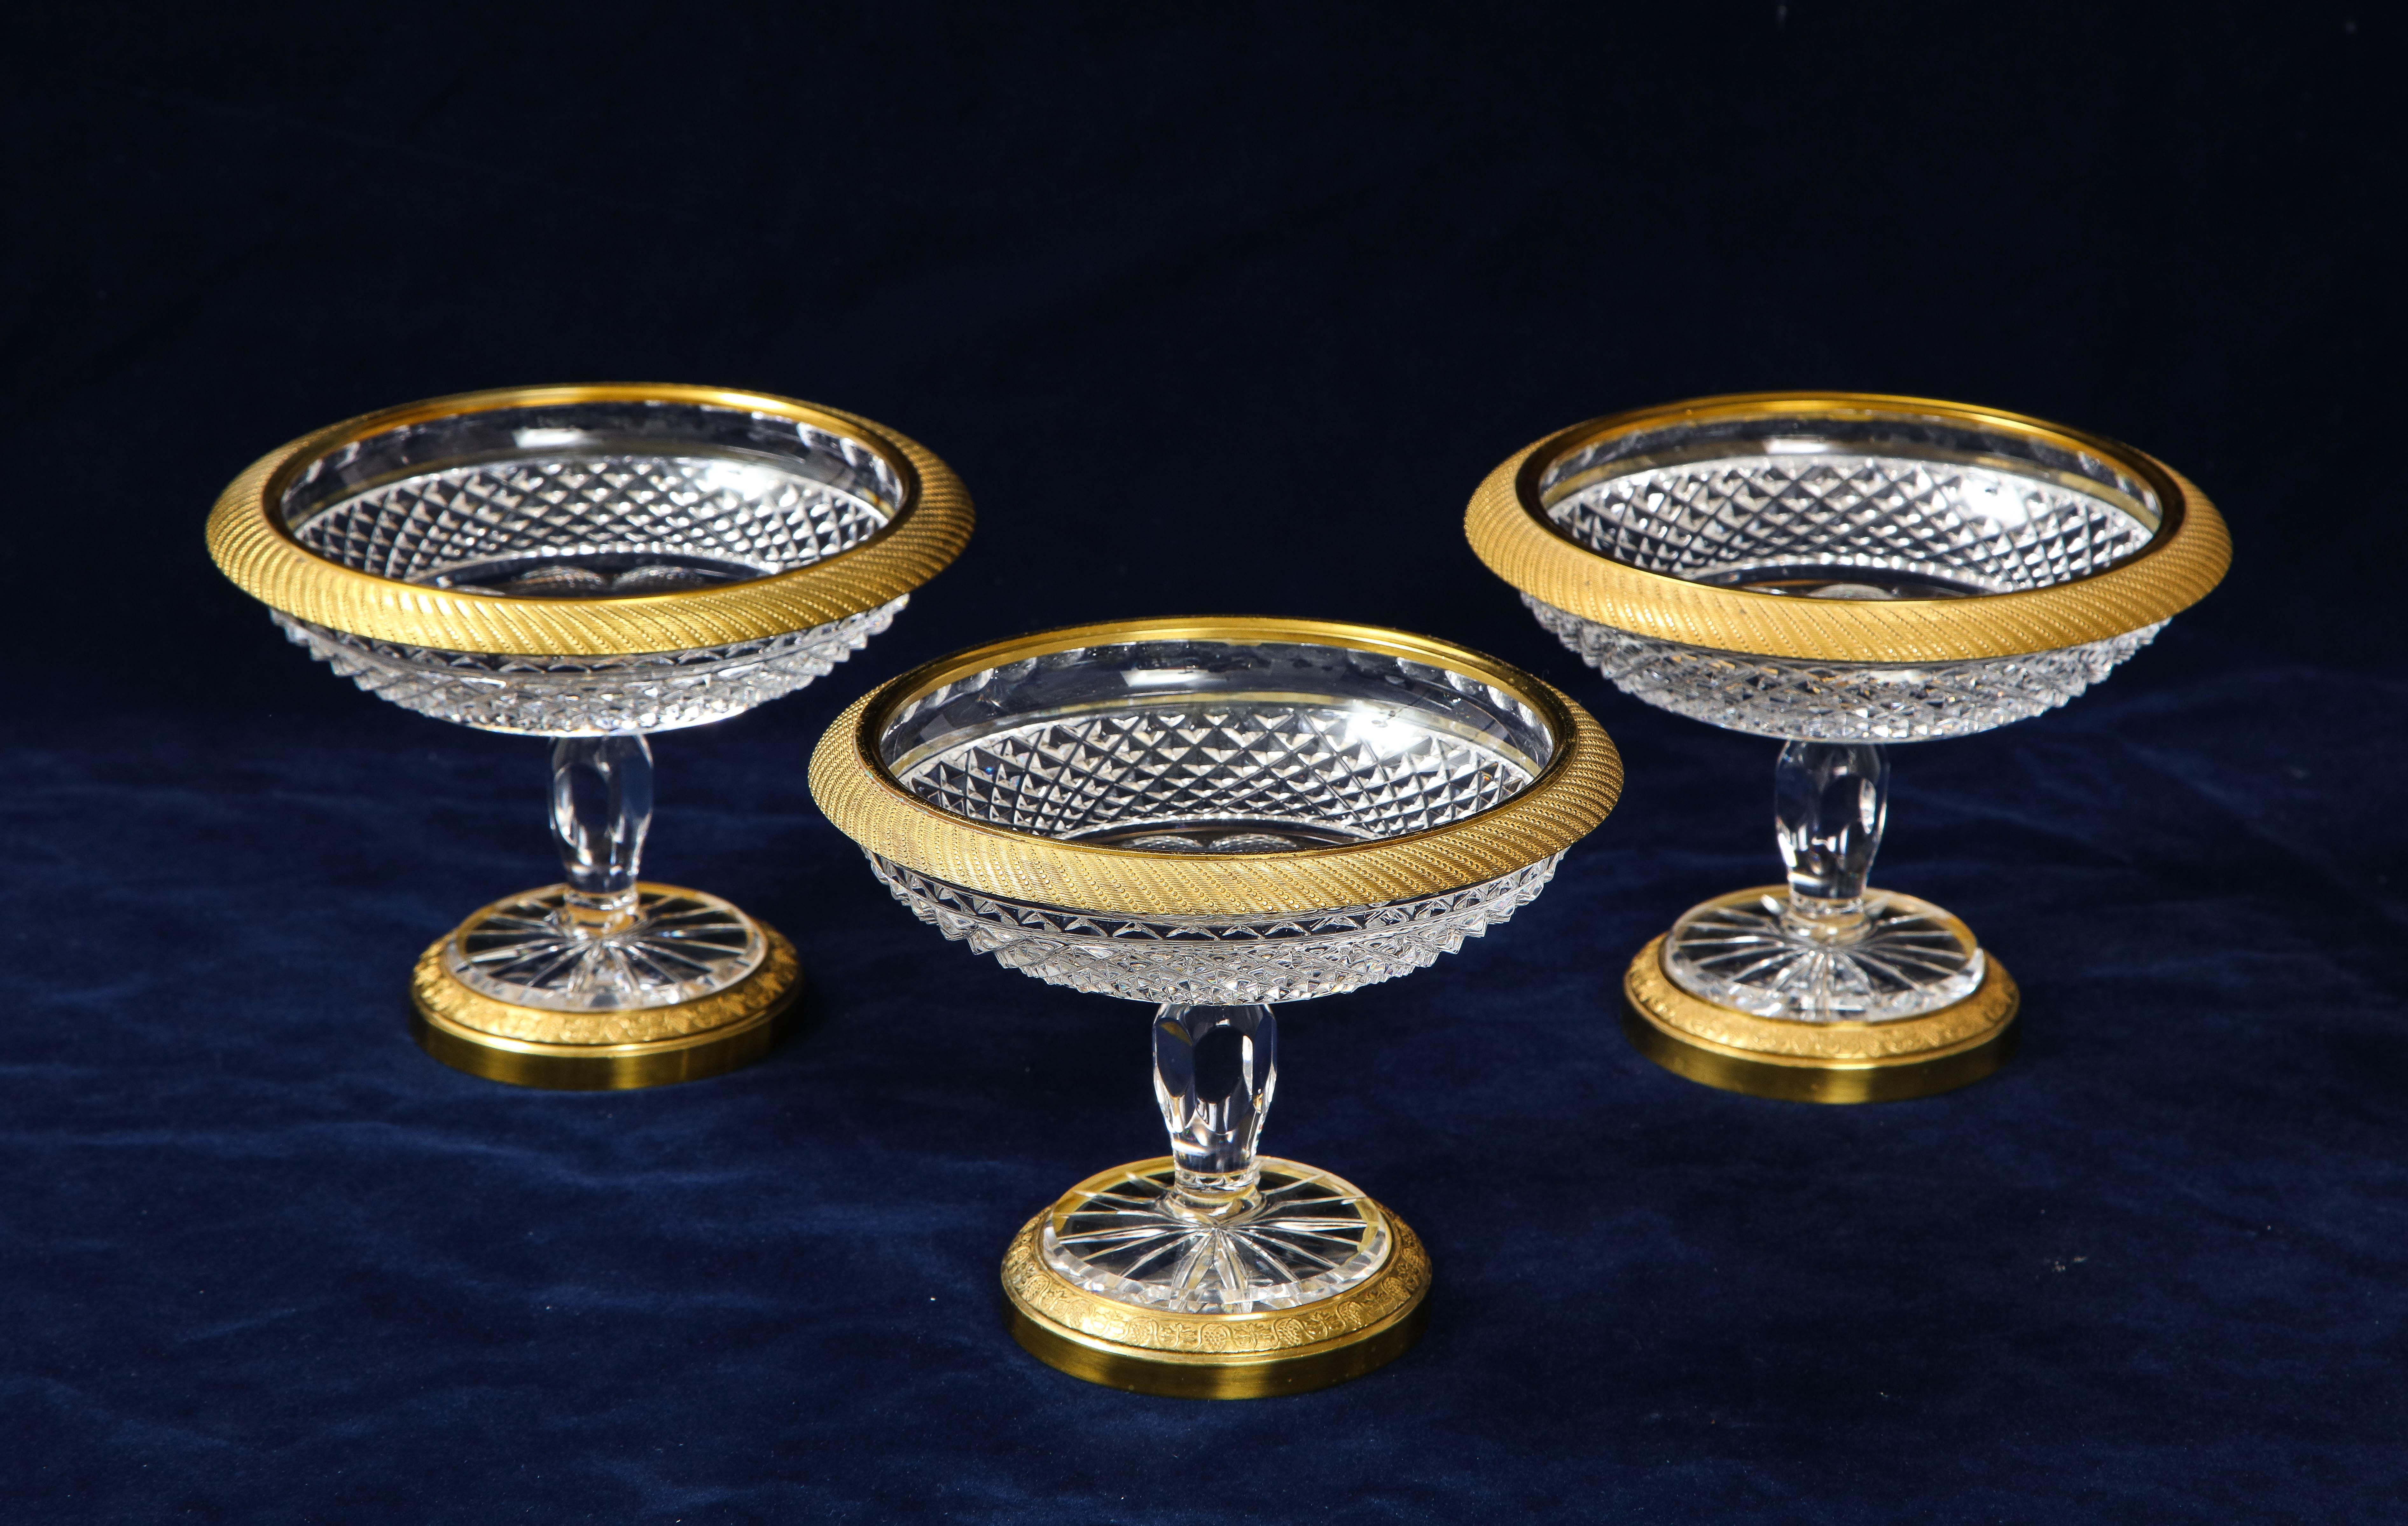 Un fabuleux ensemble de trois bols à bonbons en cristal de Baccarat de style Louis XVI, montés en bronze doré. Le cristal de chaque coupe est magnifiquement taillé au diamant à la main avec un motif de treillis et est monté sur une magnifique